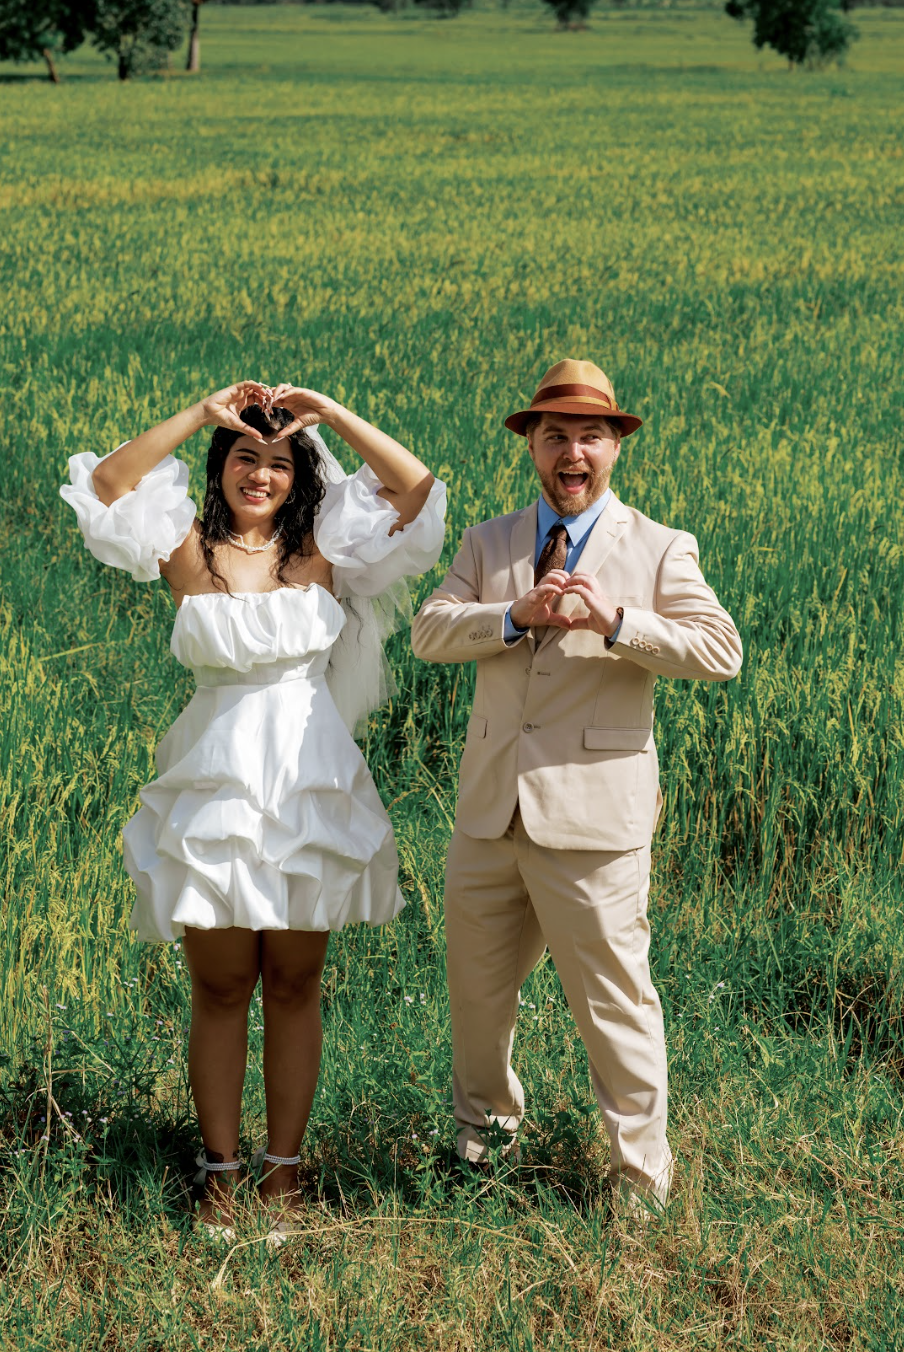 Dễ thương bộ ảnh chàng trai Mỹ chụp cùng cô gái Việt giữa đồng lúa miền Tây - Ảnh 3.